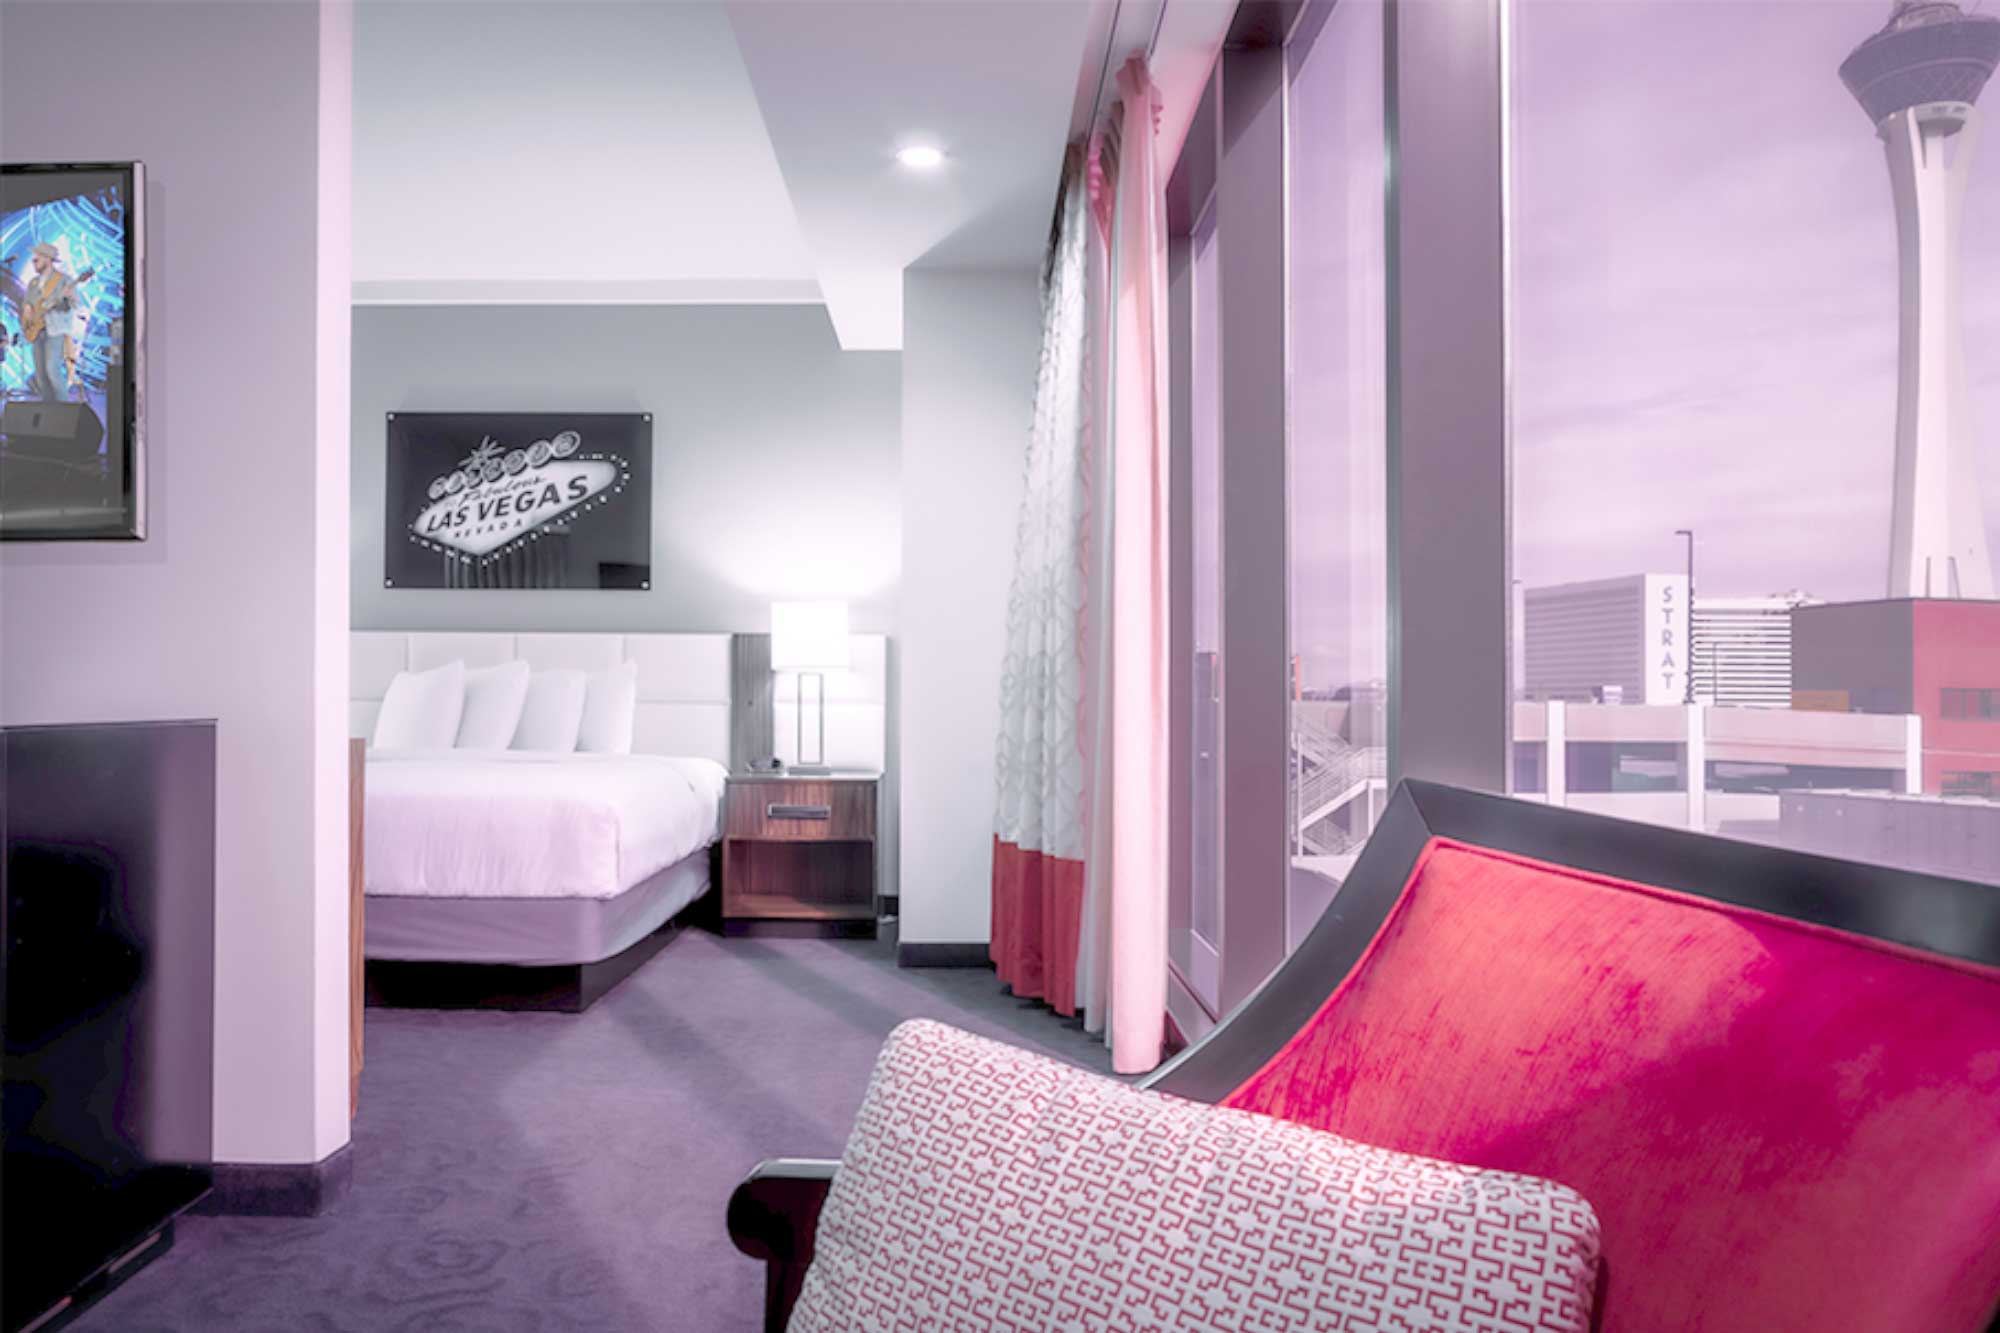 Modern Hotel Rooms in Las Vegas